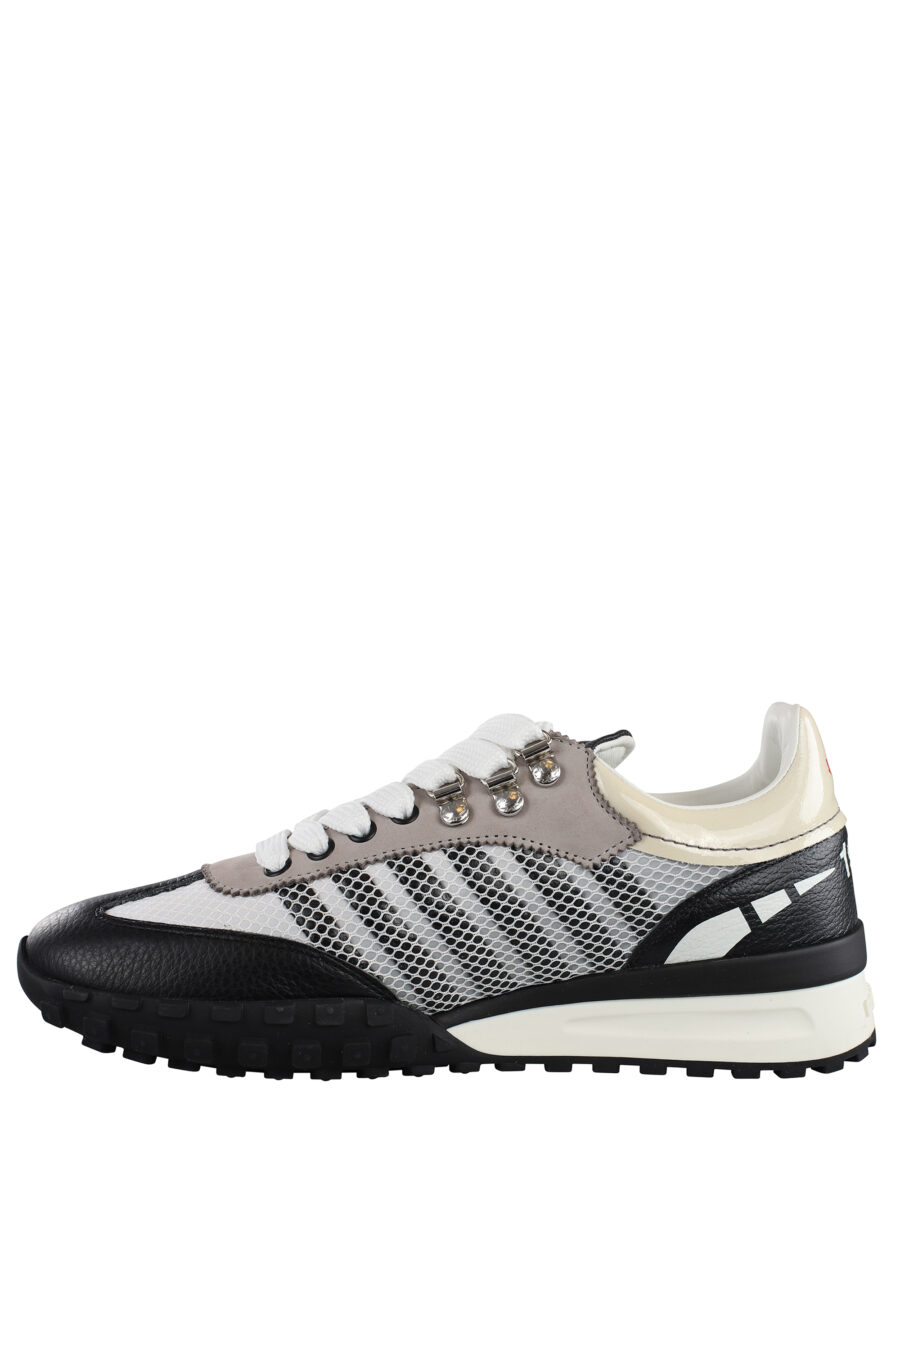 Zapatillas blancas y grises con lineas grises - IMG 7155